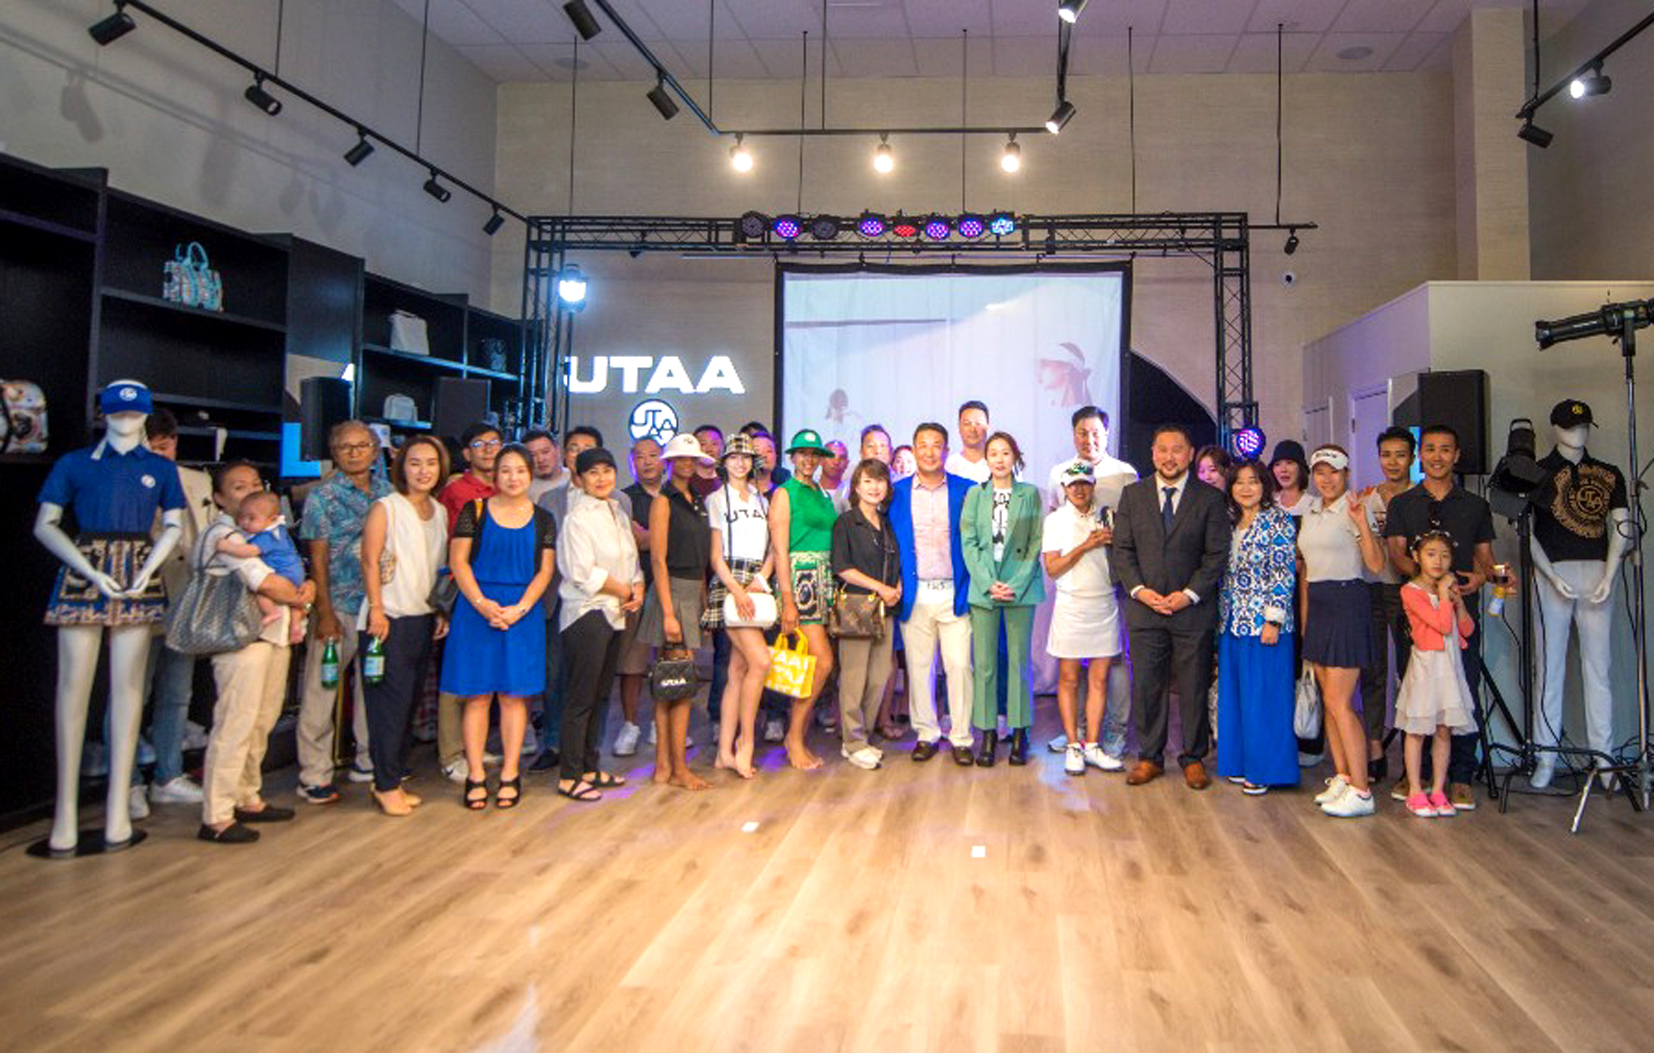 프리미엄 골프웨어 브랜드 '유타(UTAA)'가 뉴욕시 베이사이드에 플래그십 스토어를 그랜드오픈했다. '유타'는 지난 18일 노던블러바드 201-08에 위치한 스토어에서 인기 개그맨 서경석 씨 사회로 많은 사람들이 참여한 가운데 업소를 오픈하는 행사를 가졌다. [유타]